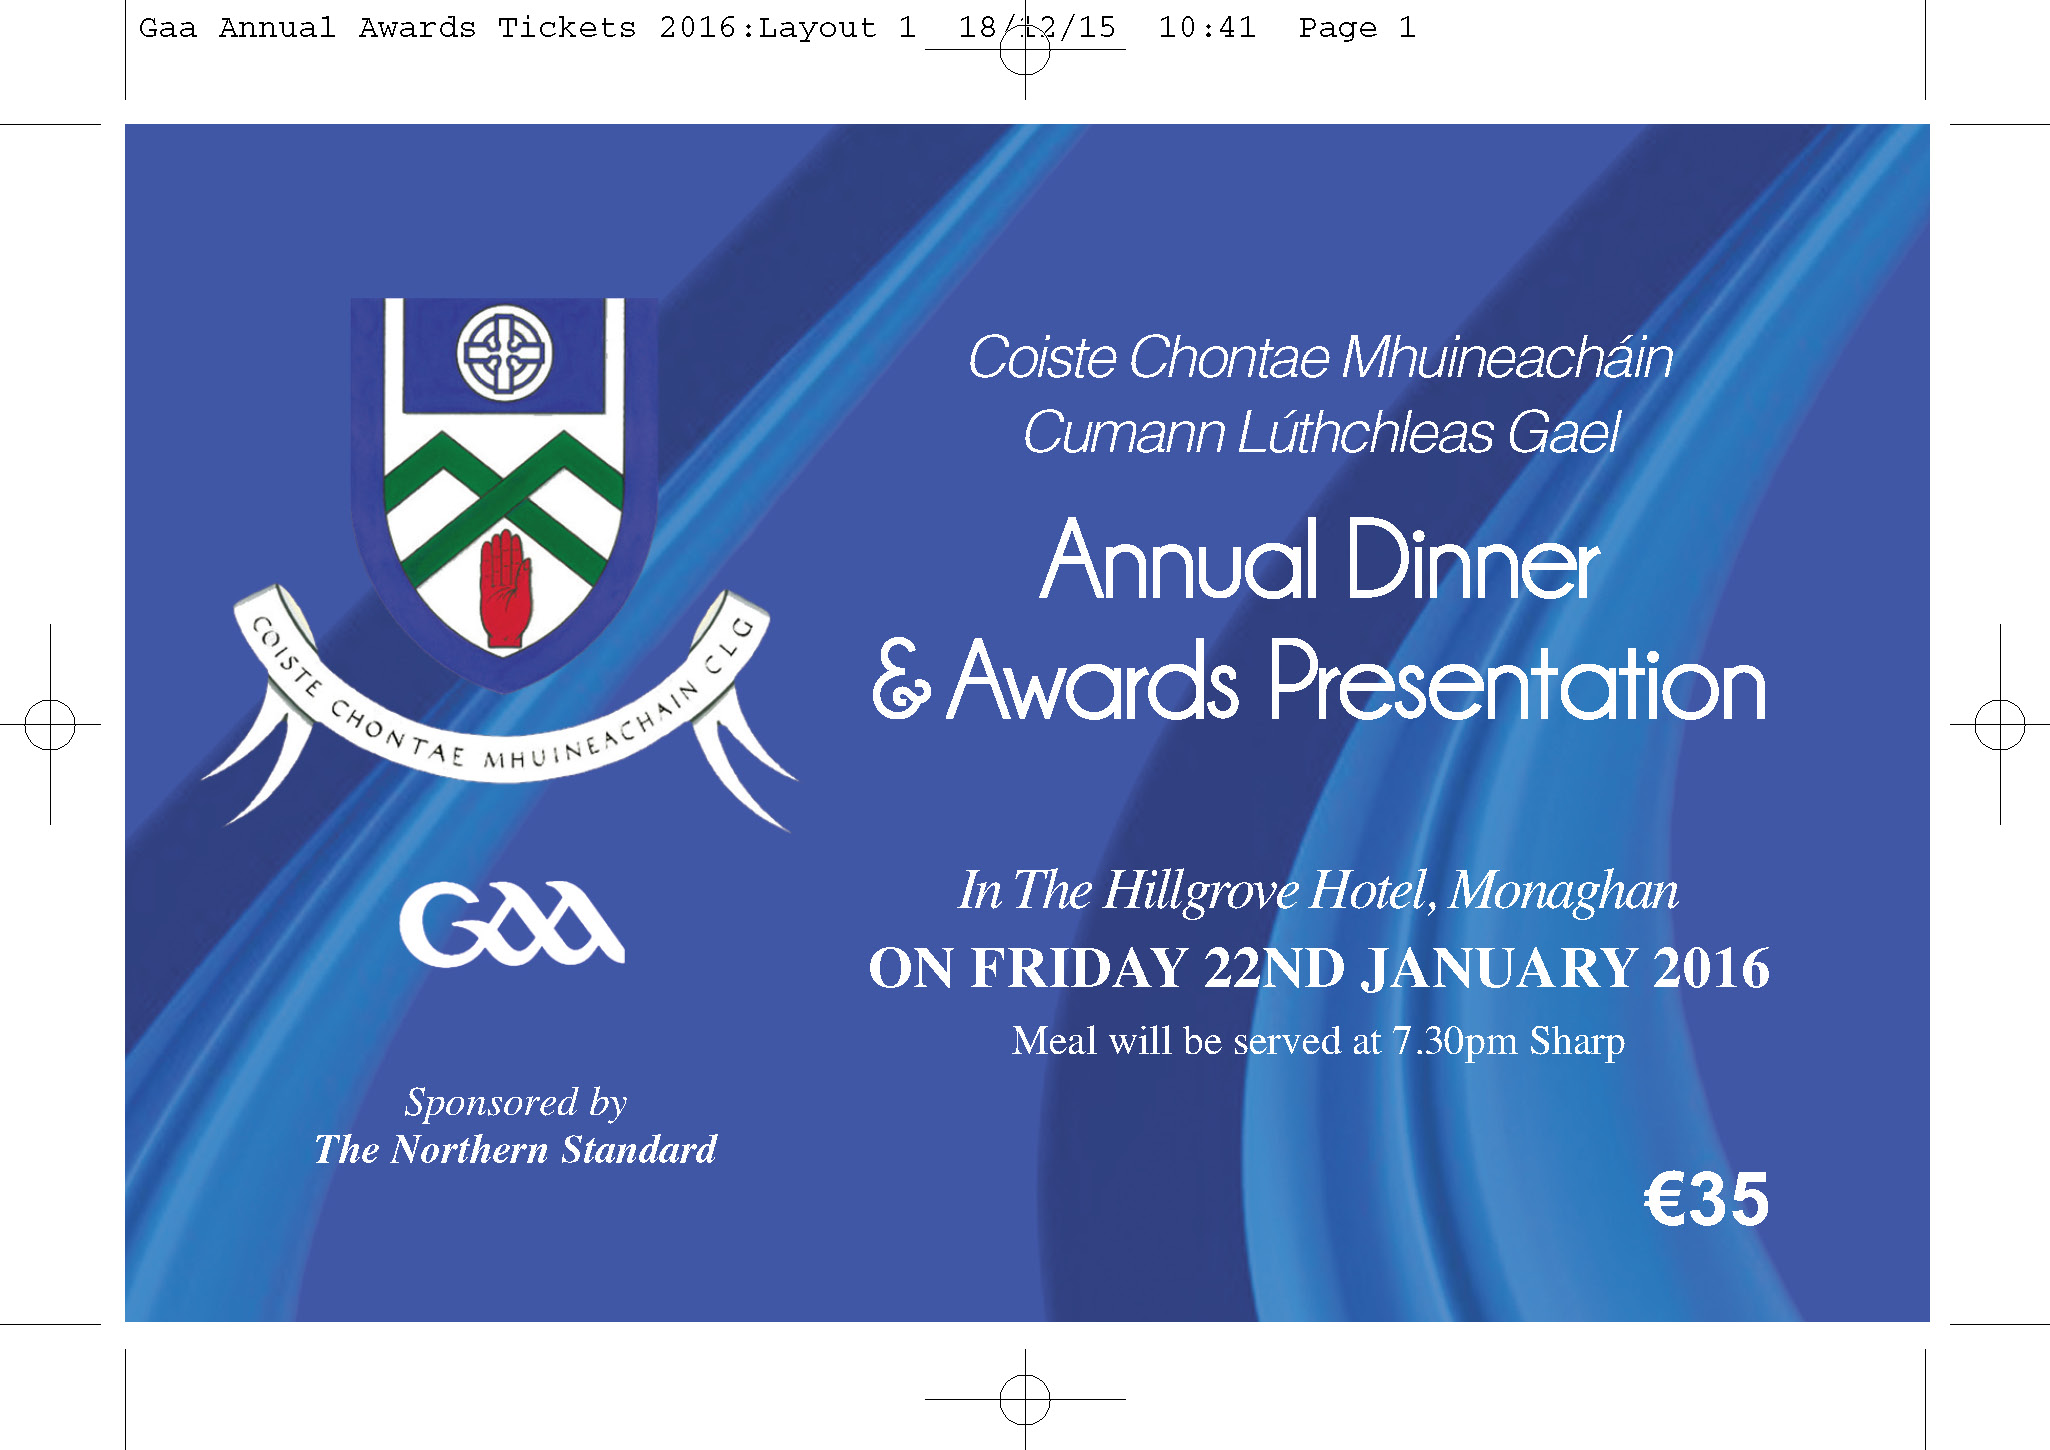 Co. Awards Night – Friday 22nd January